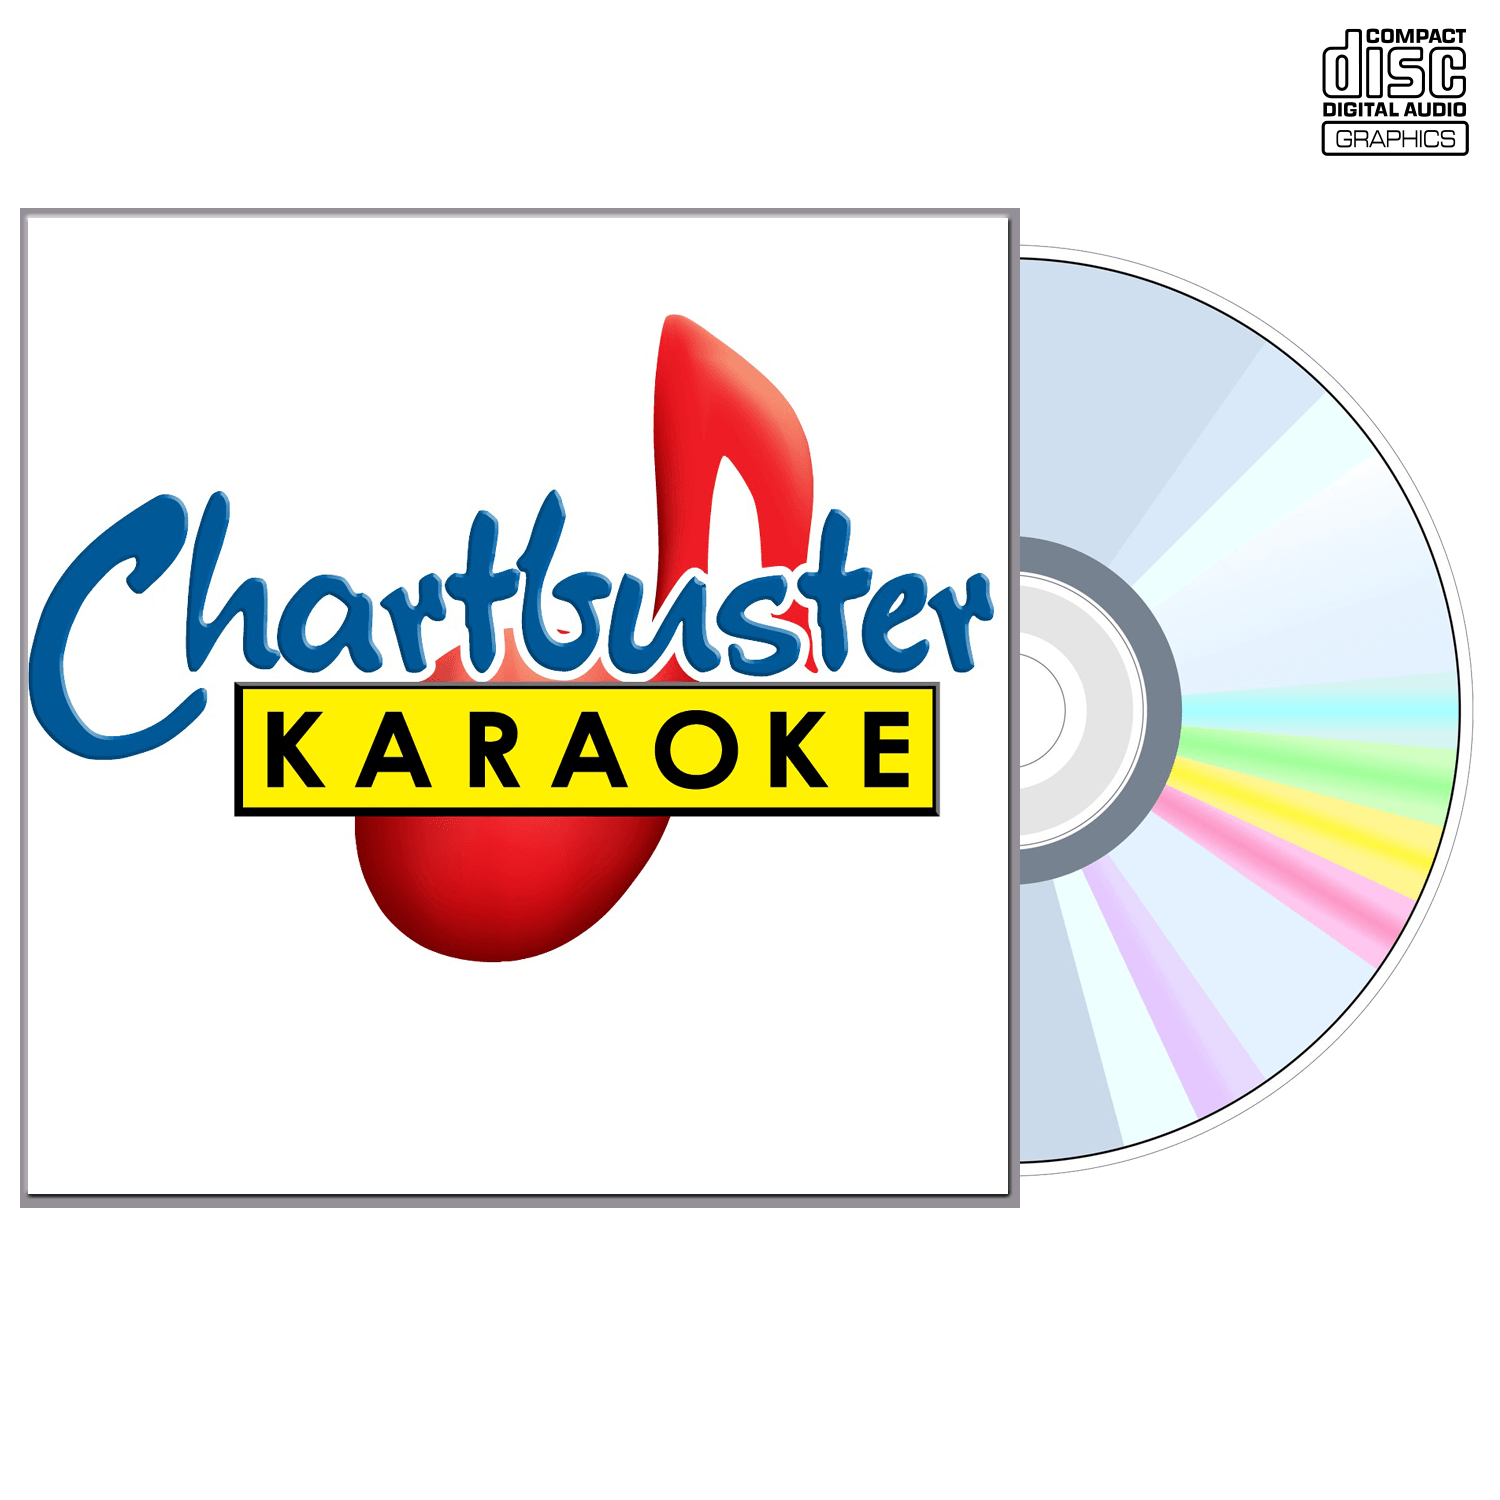 Bobby Bare - CD+G - Chartbuster Karaoke - Karaoke Home Entertainment